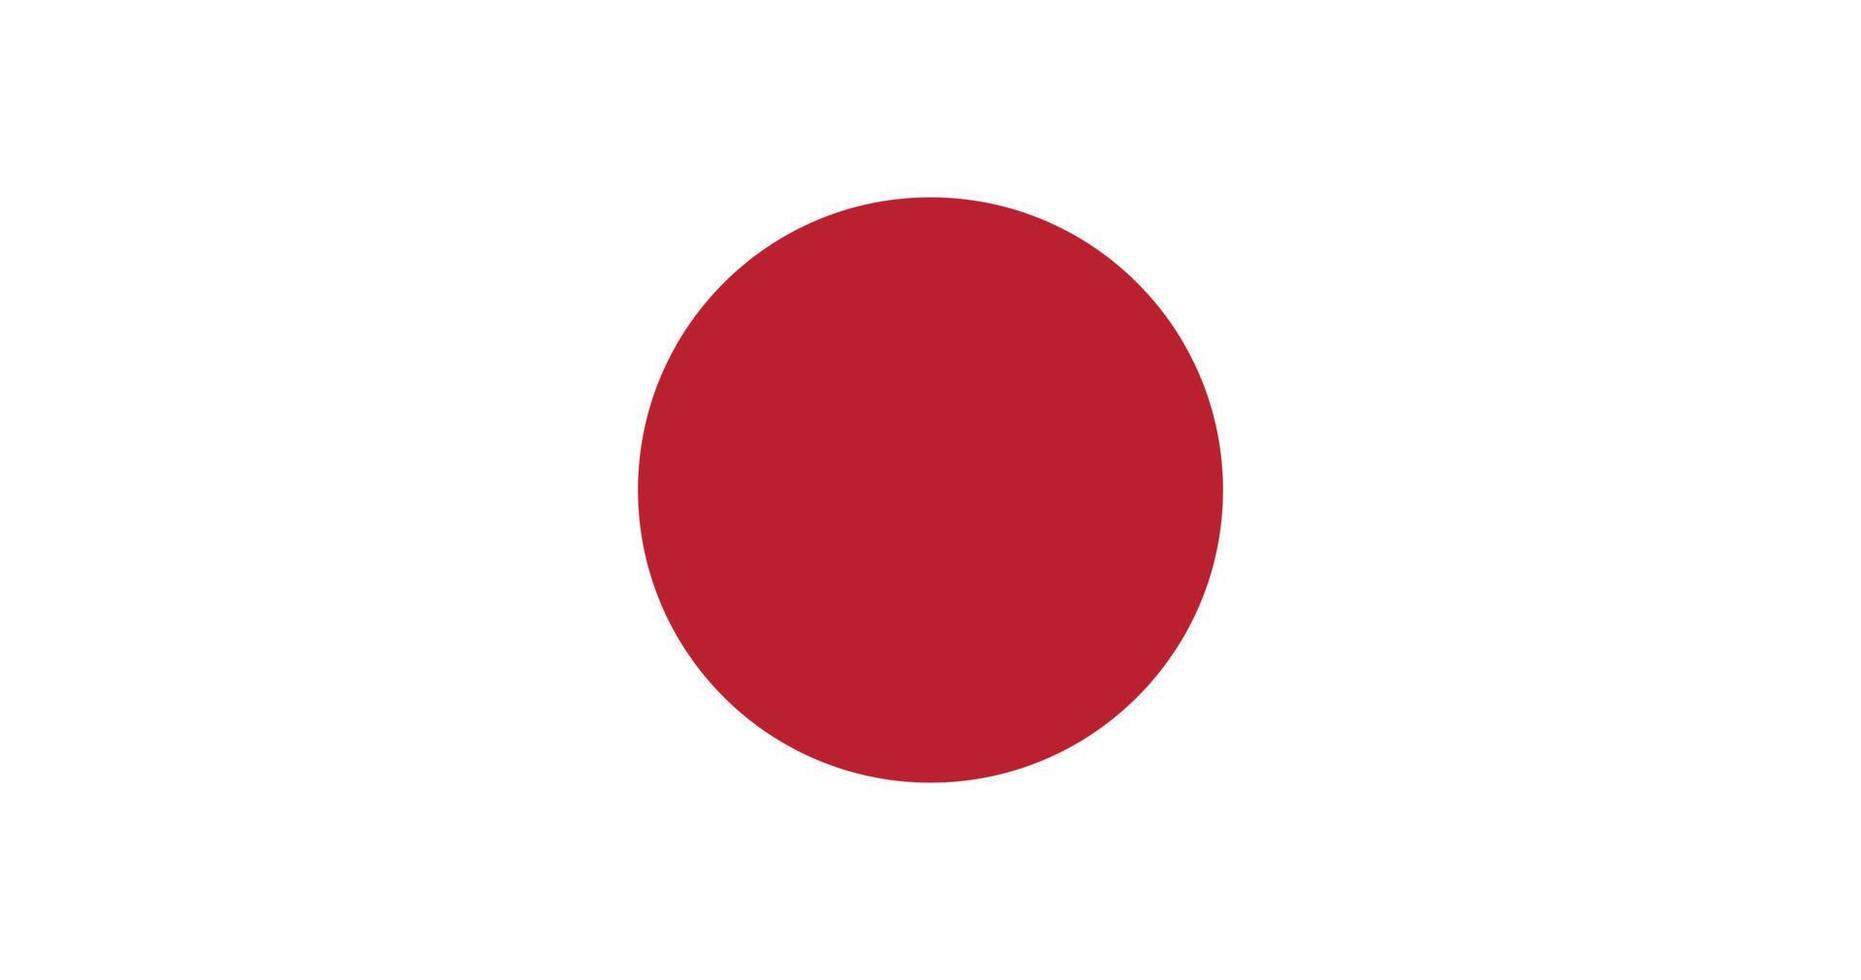 Japan flag with original RGB color vector illustration design